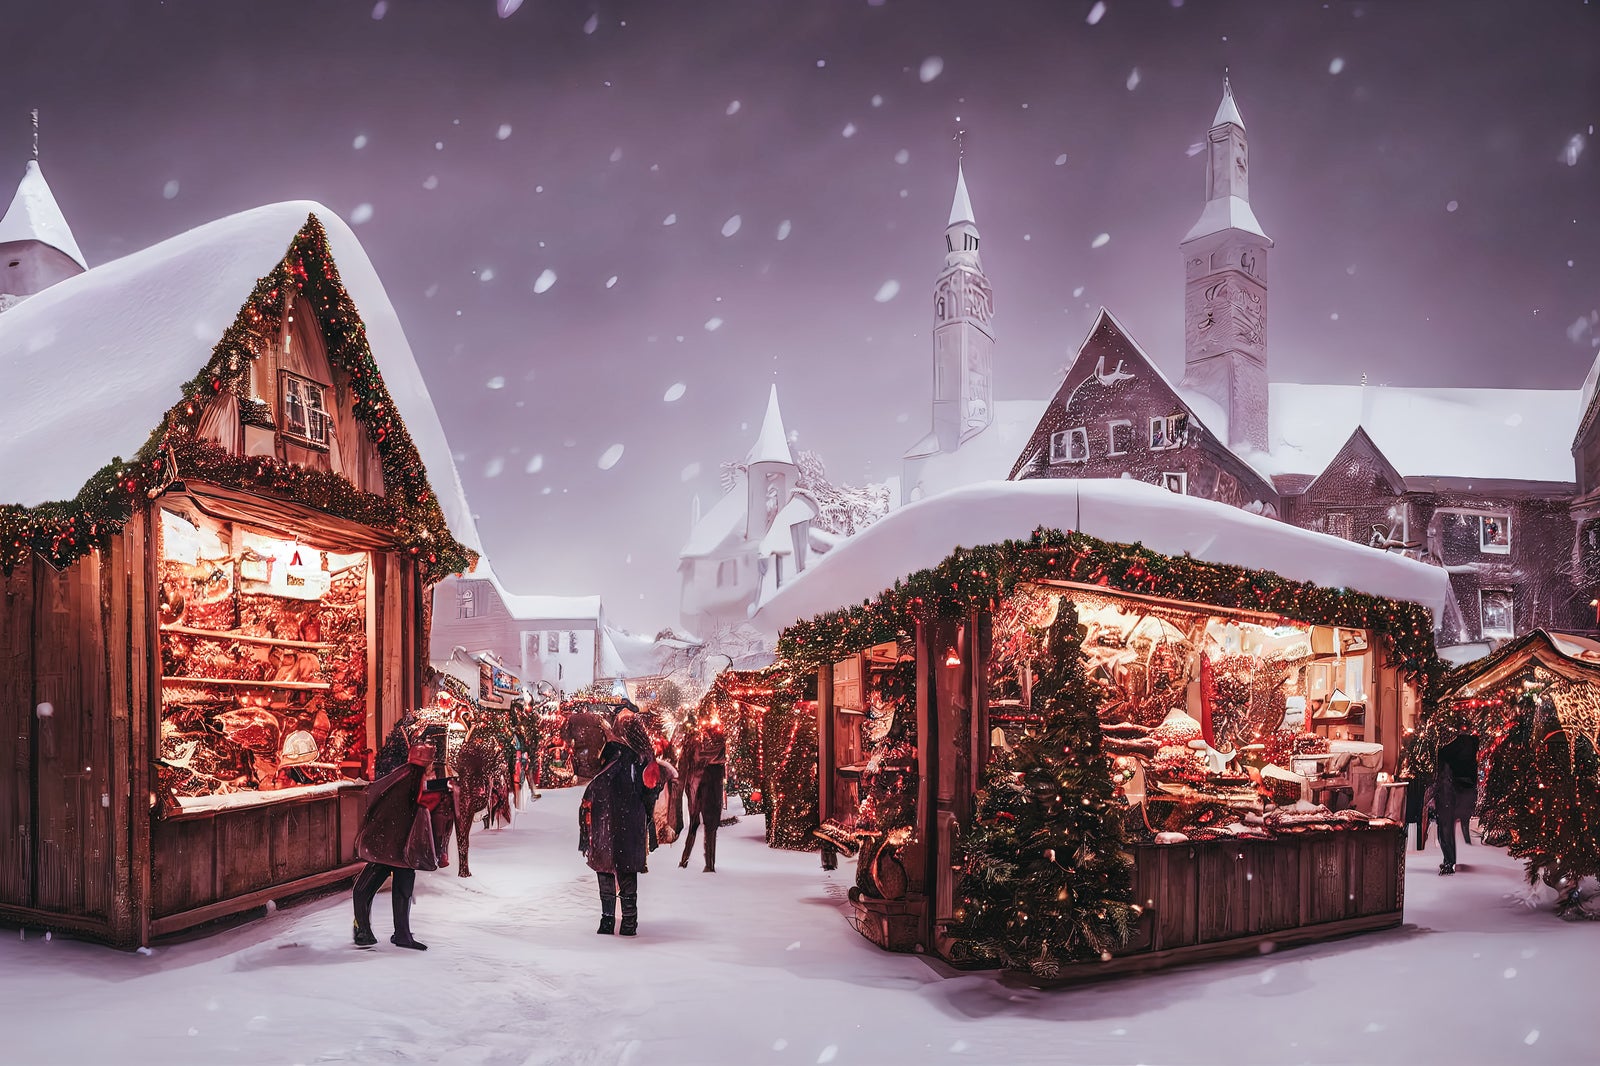 「舞い散る雪とクリスマスに関連したイベントに出店するショップ」の写真